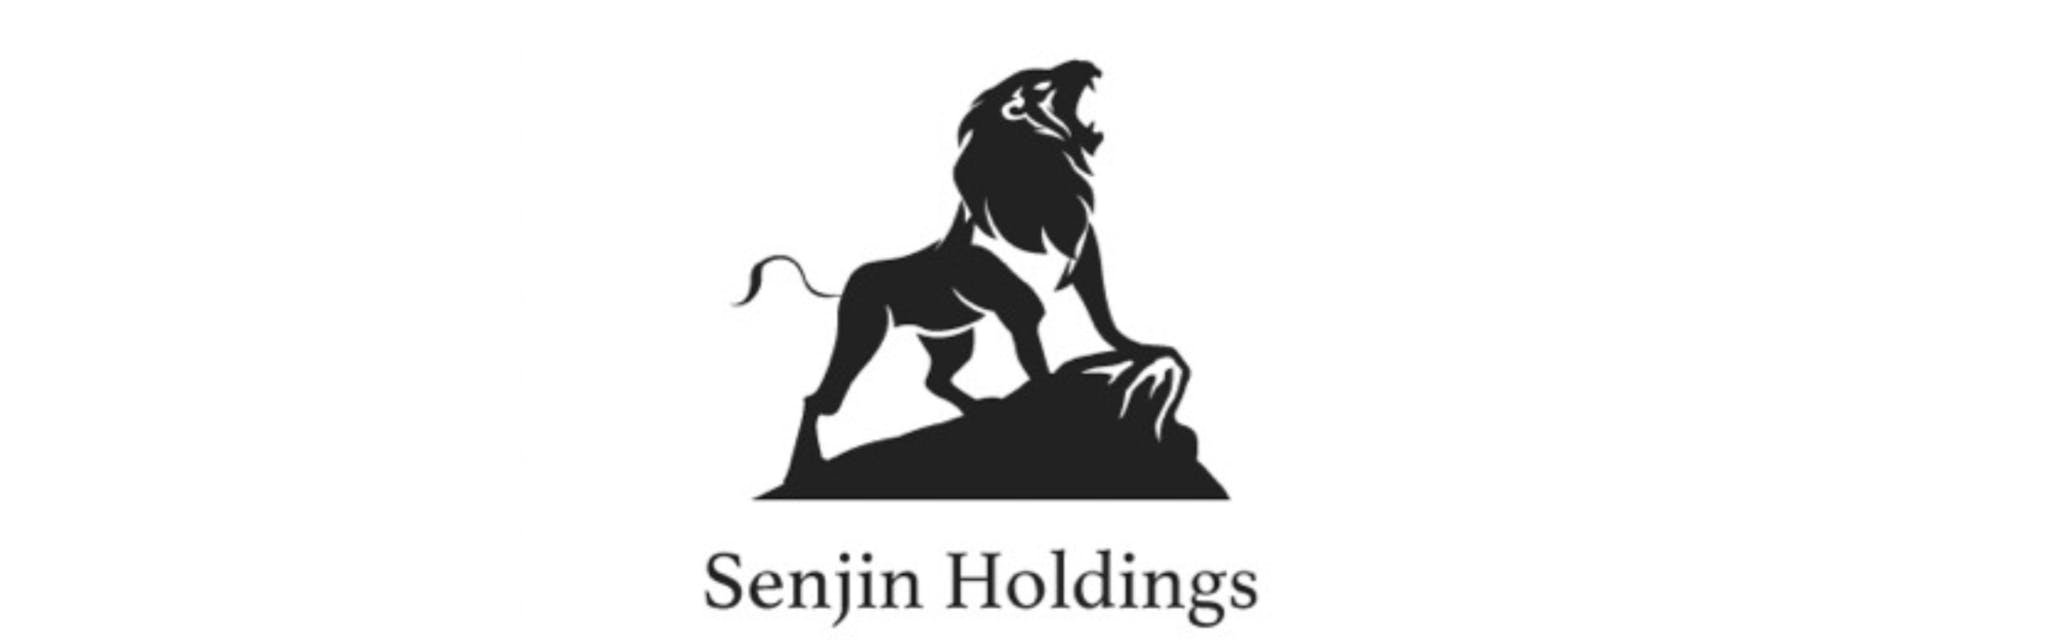 株式会社Senjin Holdings - カバー画像